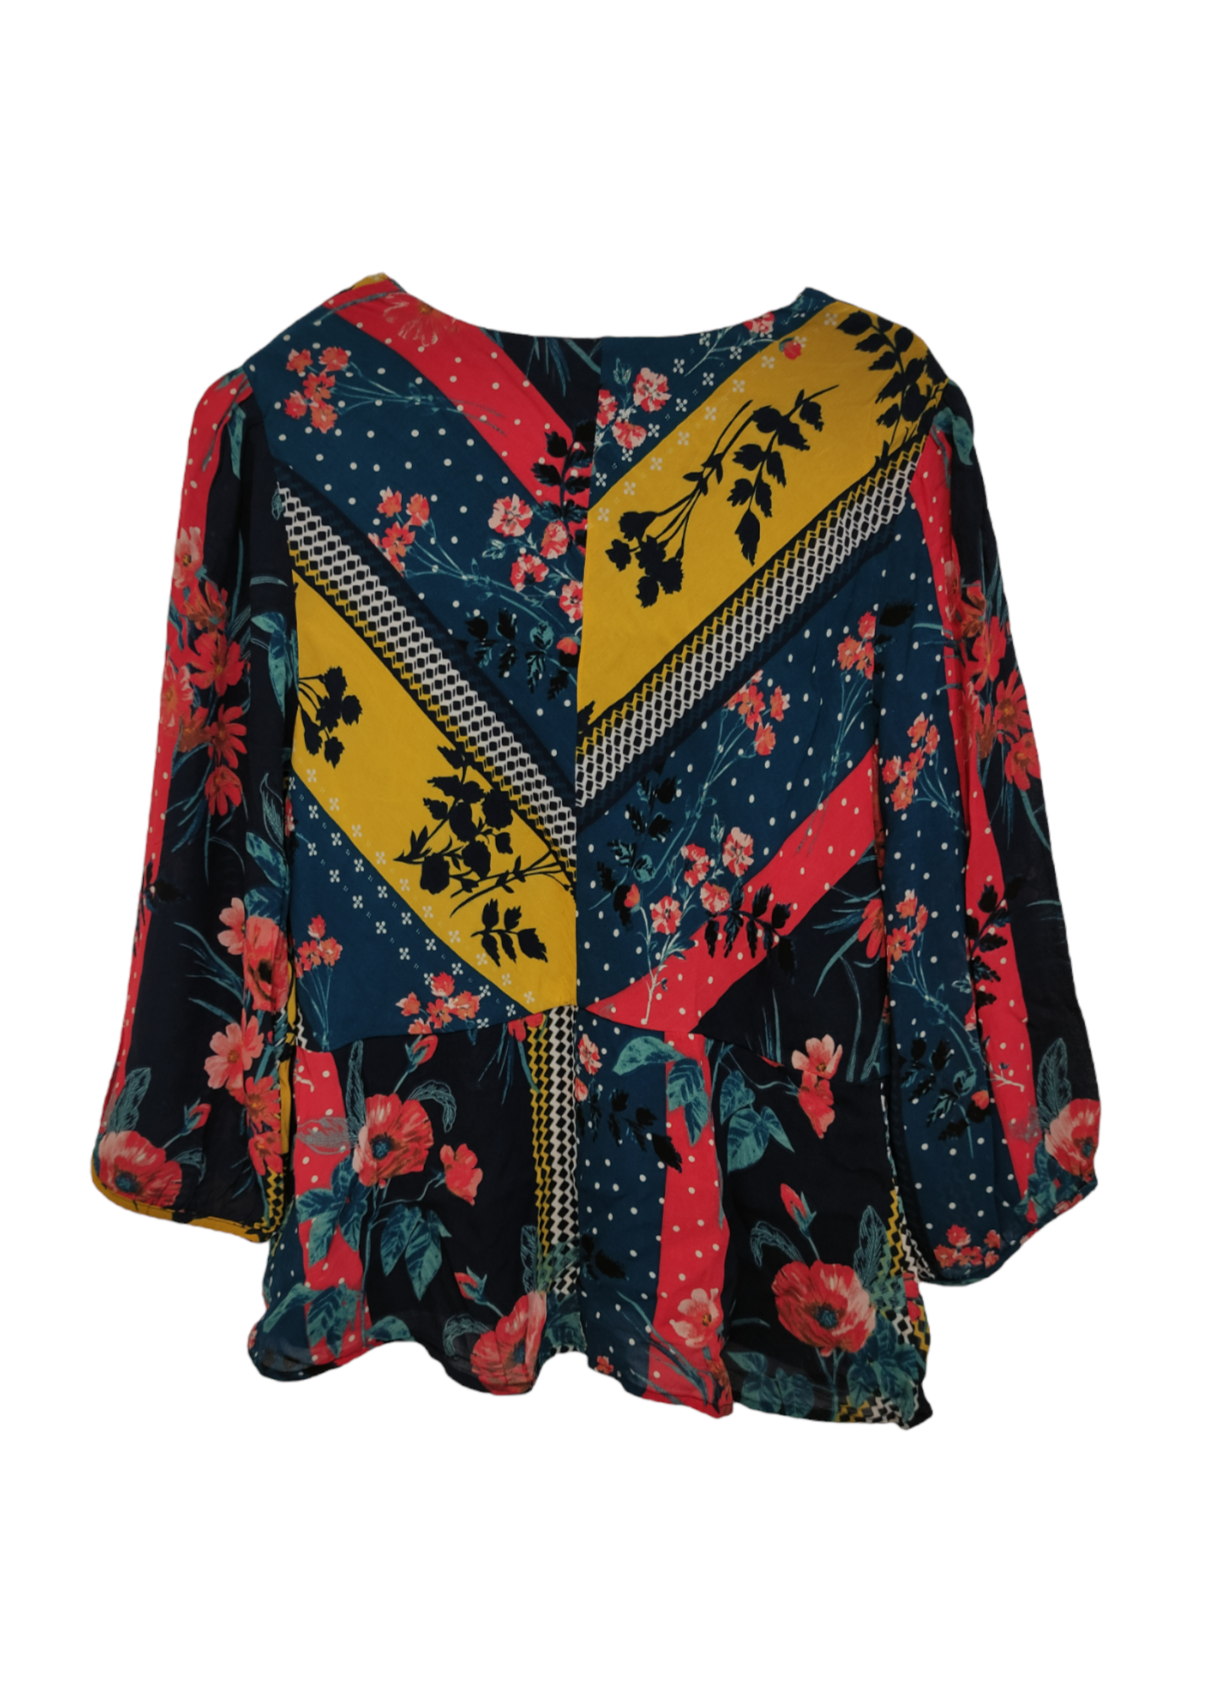 Φλοράλ Γυναικεία Μπλούζα MONSOON σε Παστέλ χρώματα (M/L)